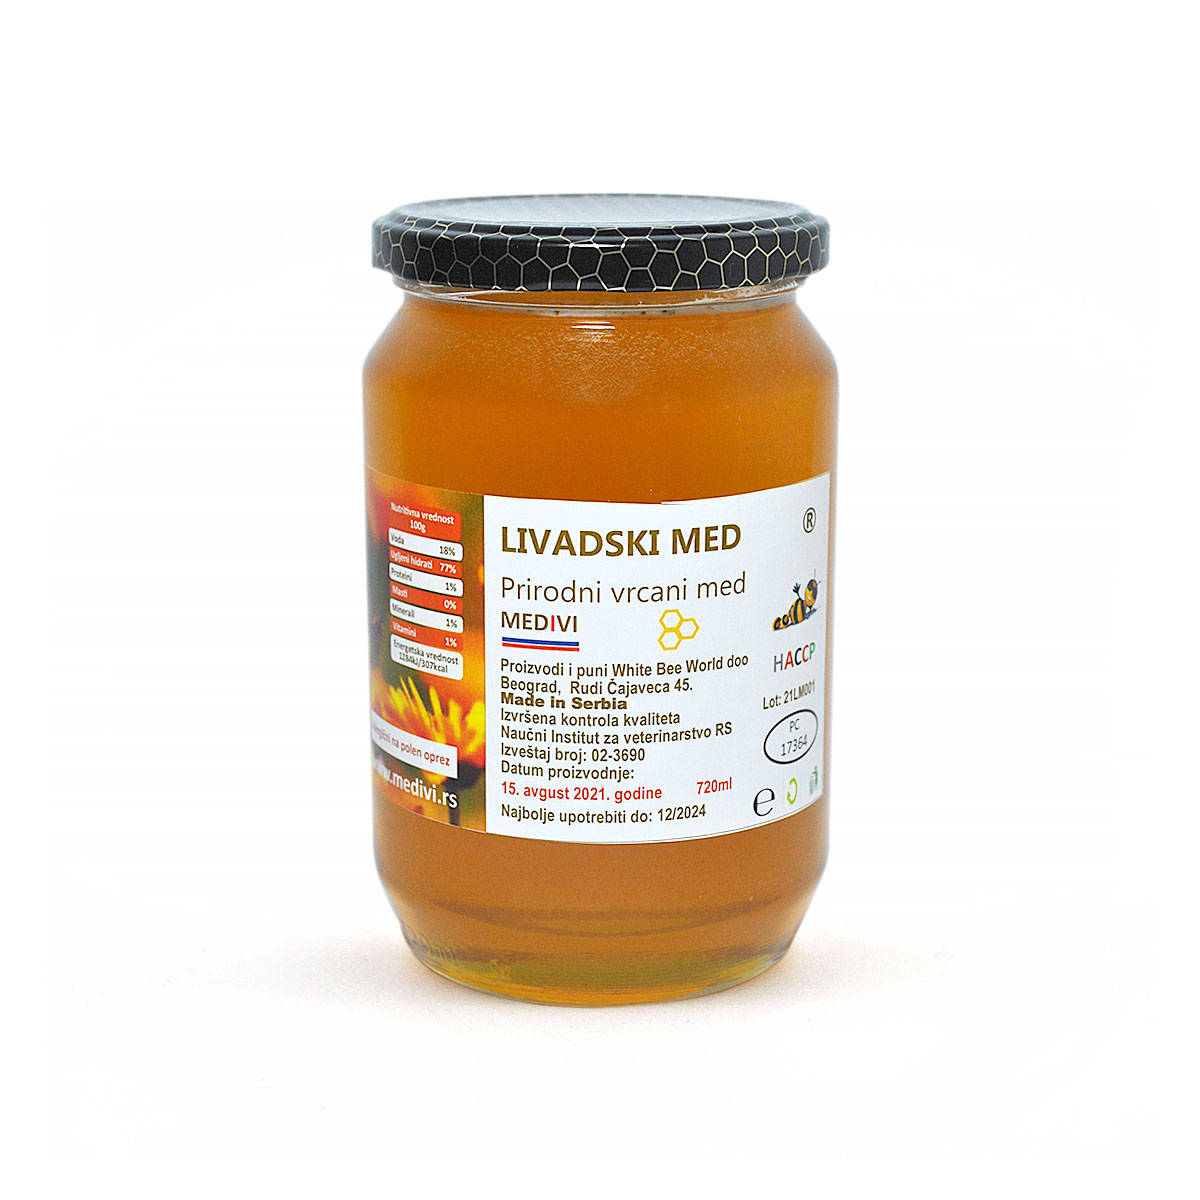 Honey meadow. Базиликовый мед. Now soy Protein isolate. Кипрский мед. Мёд из базилика.